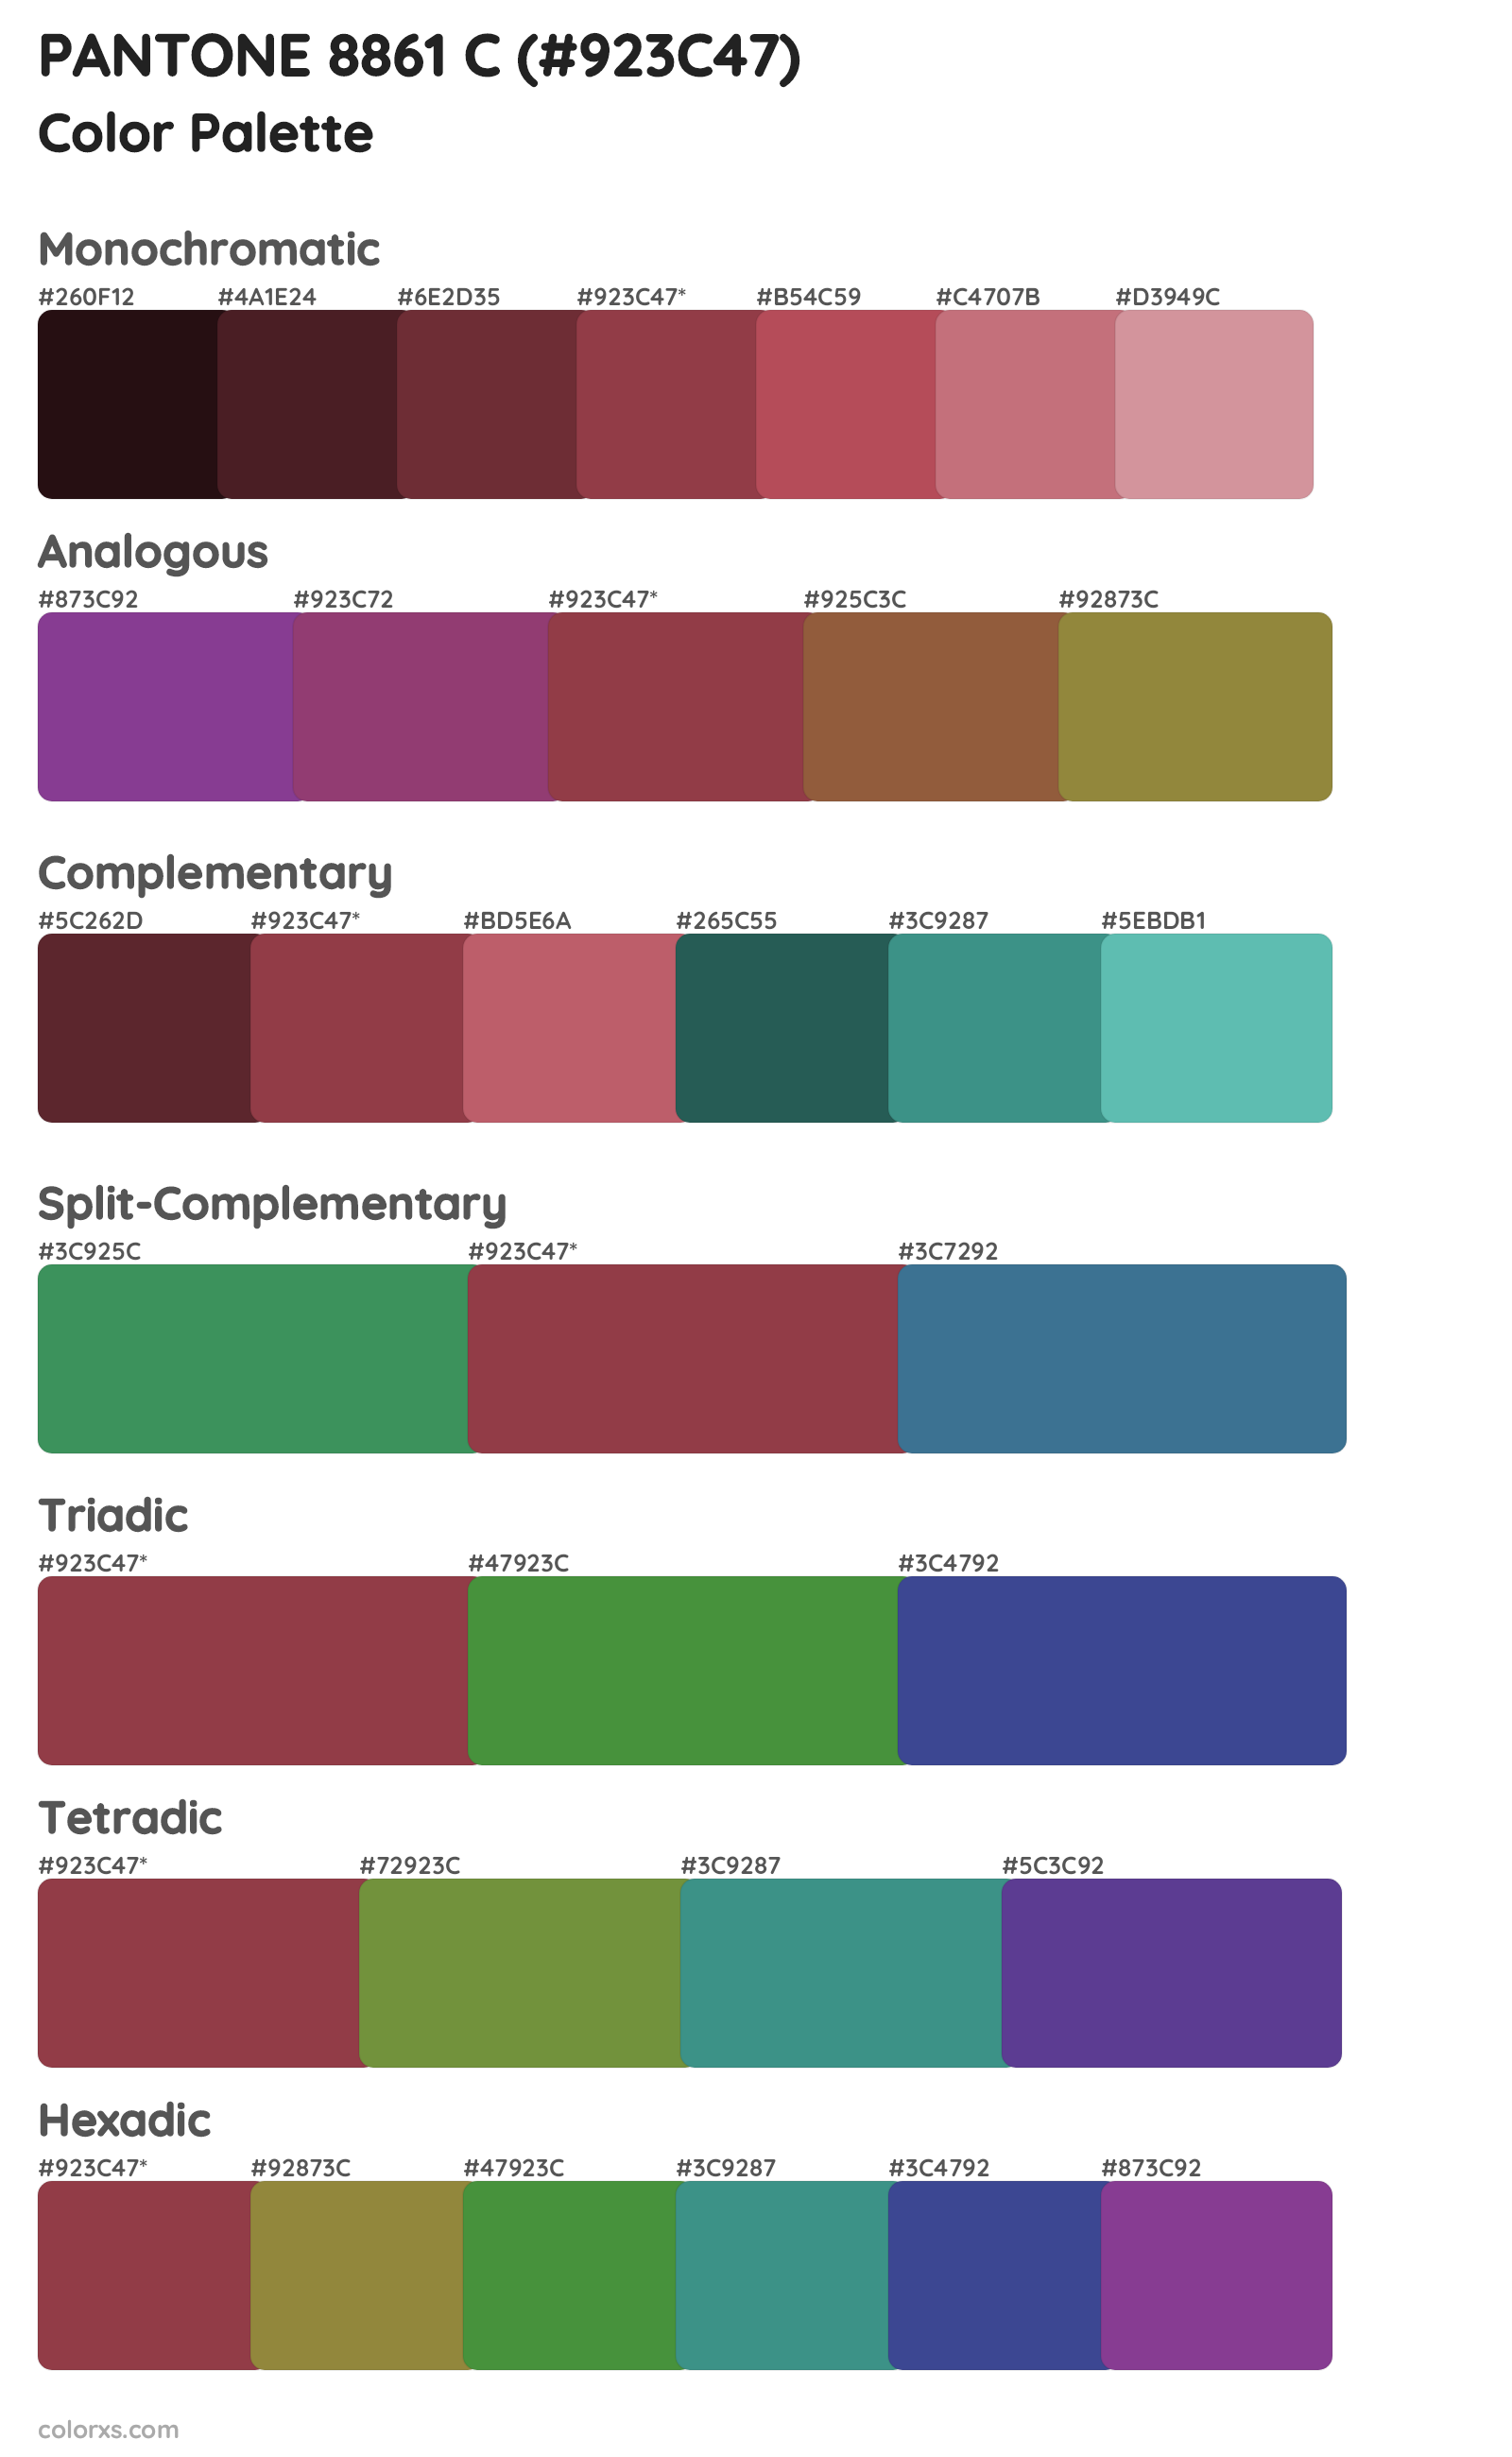 PANTONE 8861 C Color Scheme Palettes